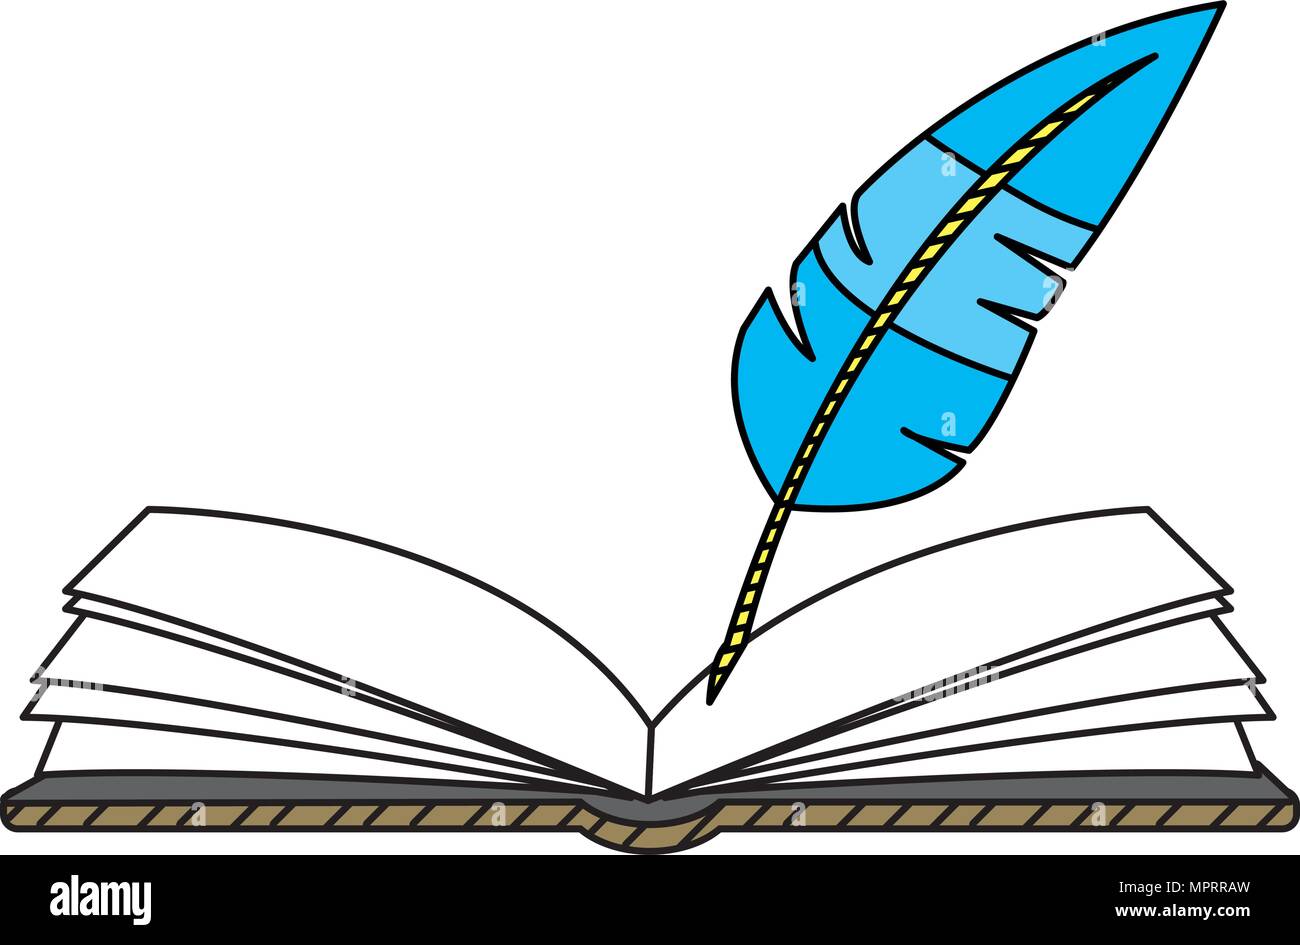 Dibujo De Libro Abierto Con La Ilustración De Plumas. Ilustraciones svg,  vectoriales, clip art vectorizado libre de derechos. Image 11505344